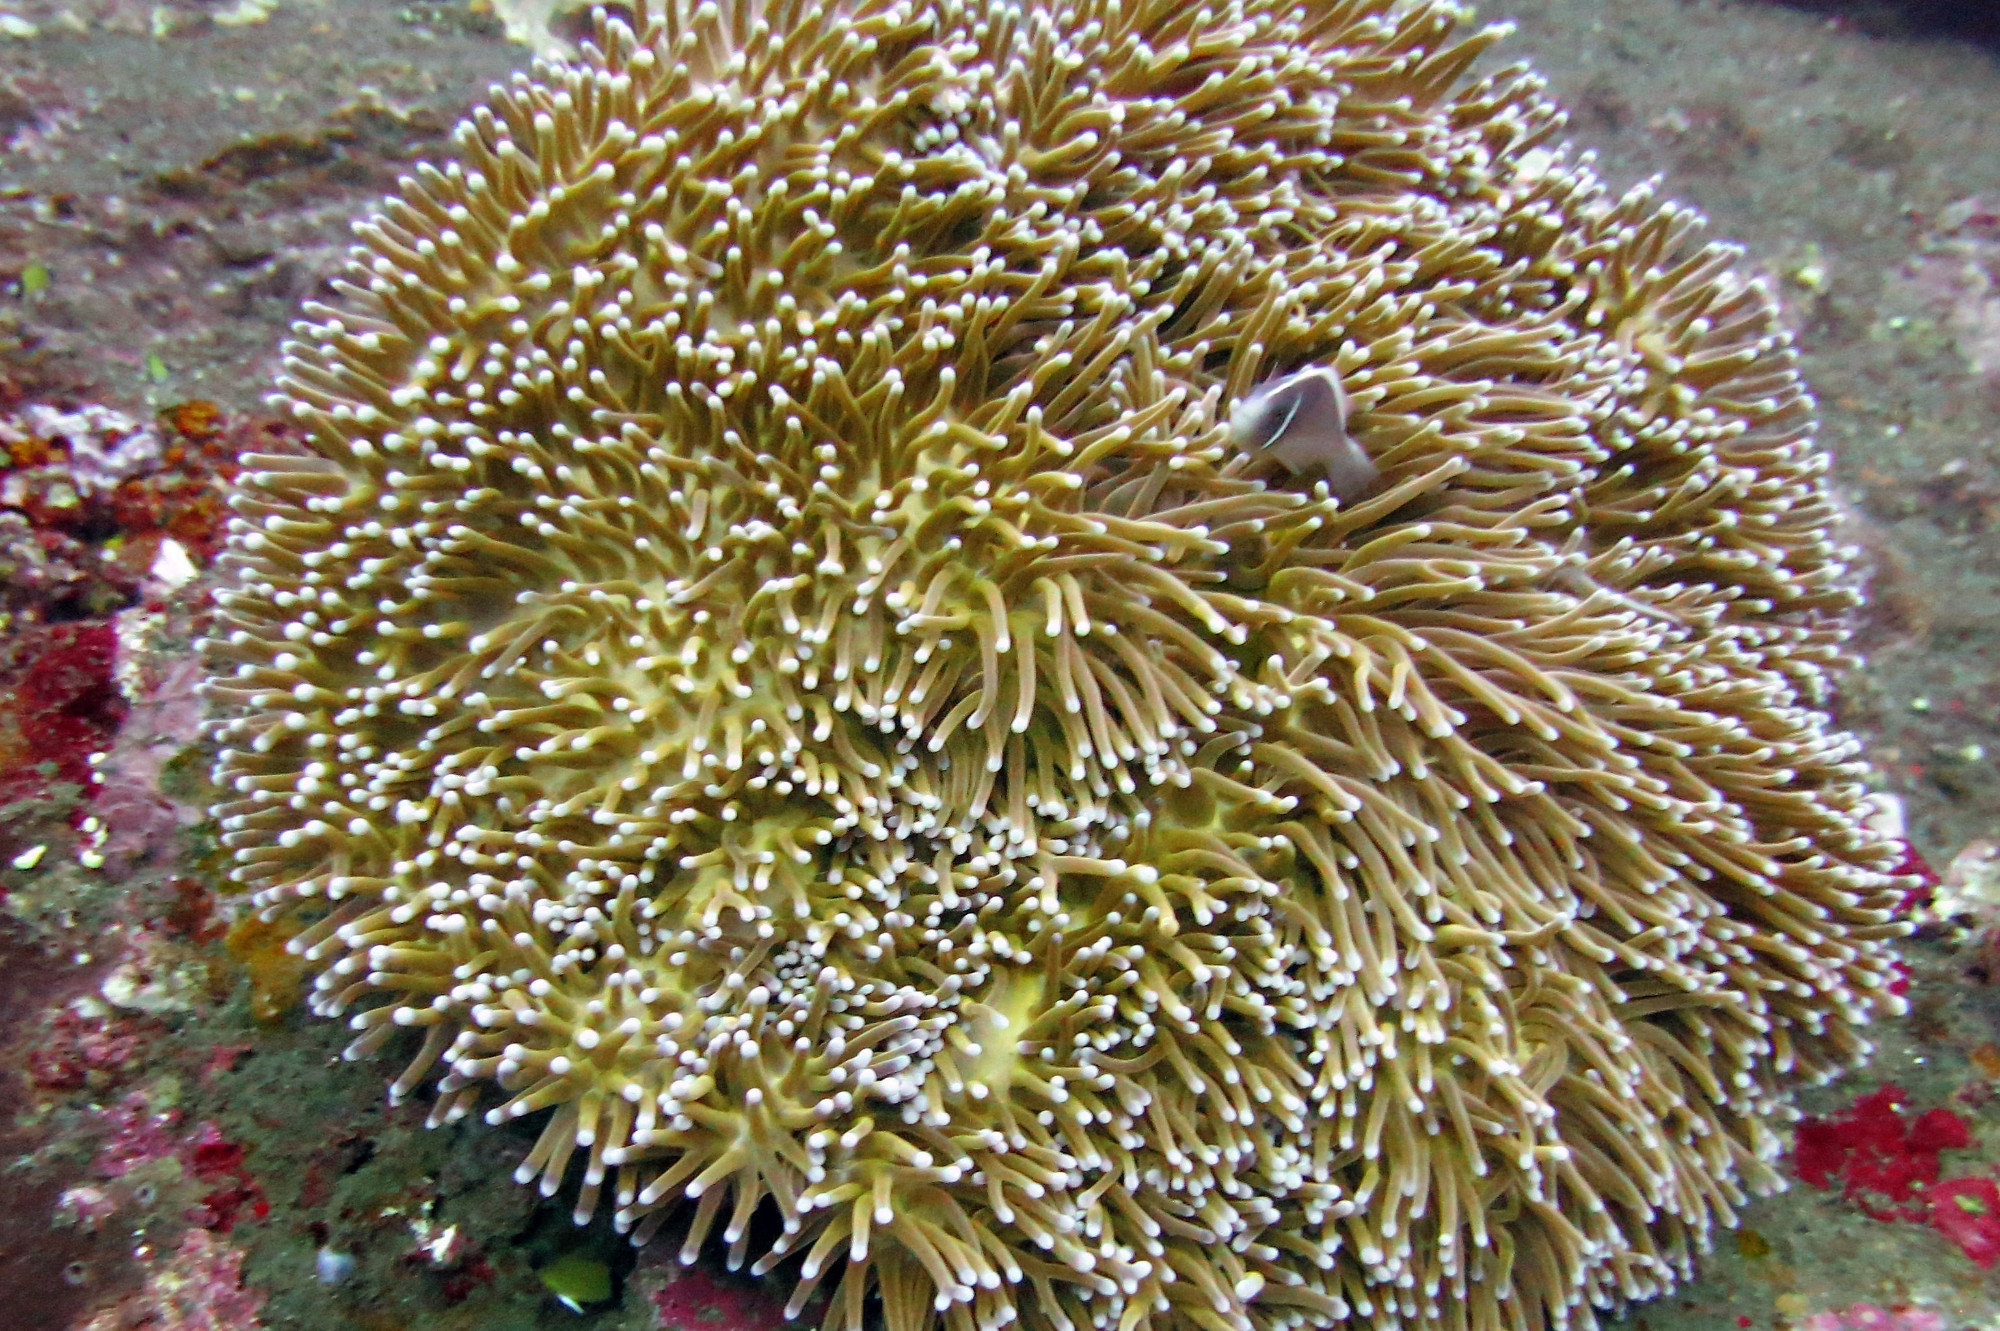 Anenomefish